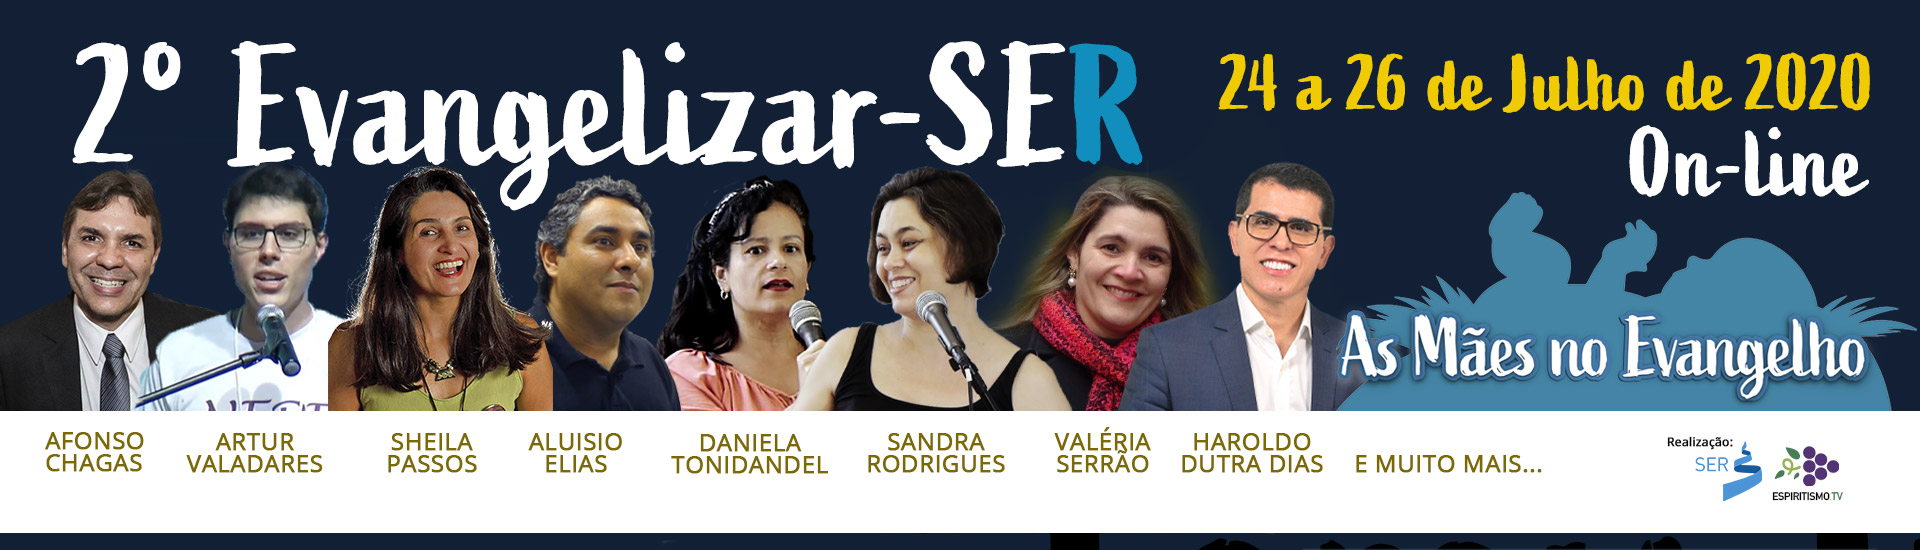 Banner.Evangelizar-SER2020.online